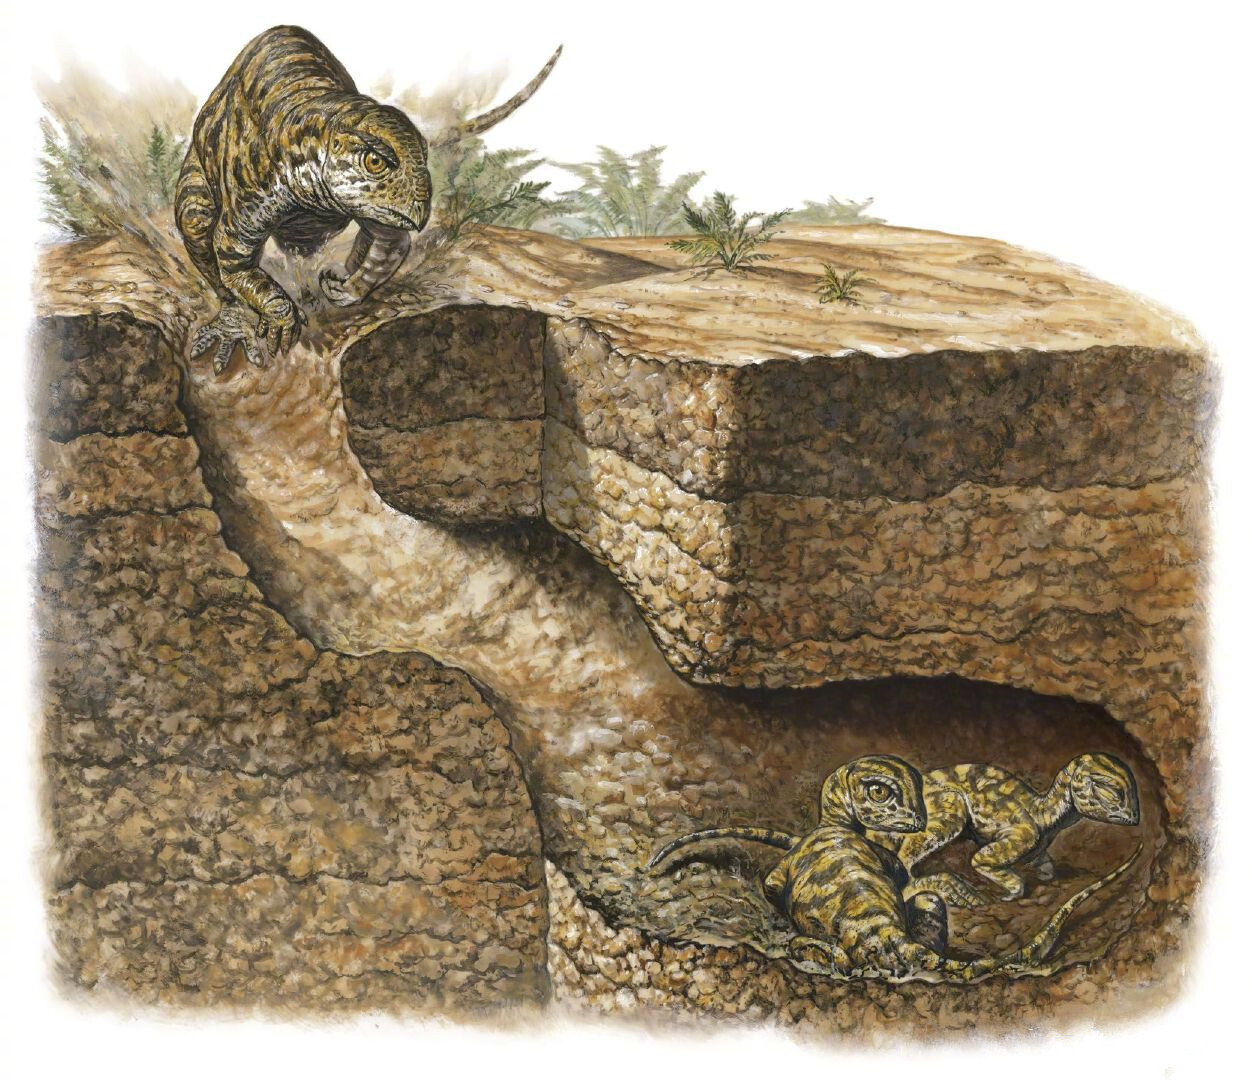 图注:会挖洞居住的掘奔龙(oryctodromeus),图片来自网络